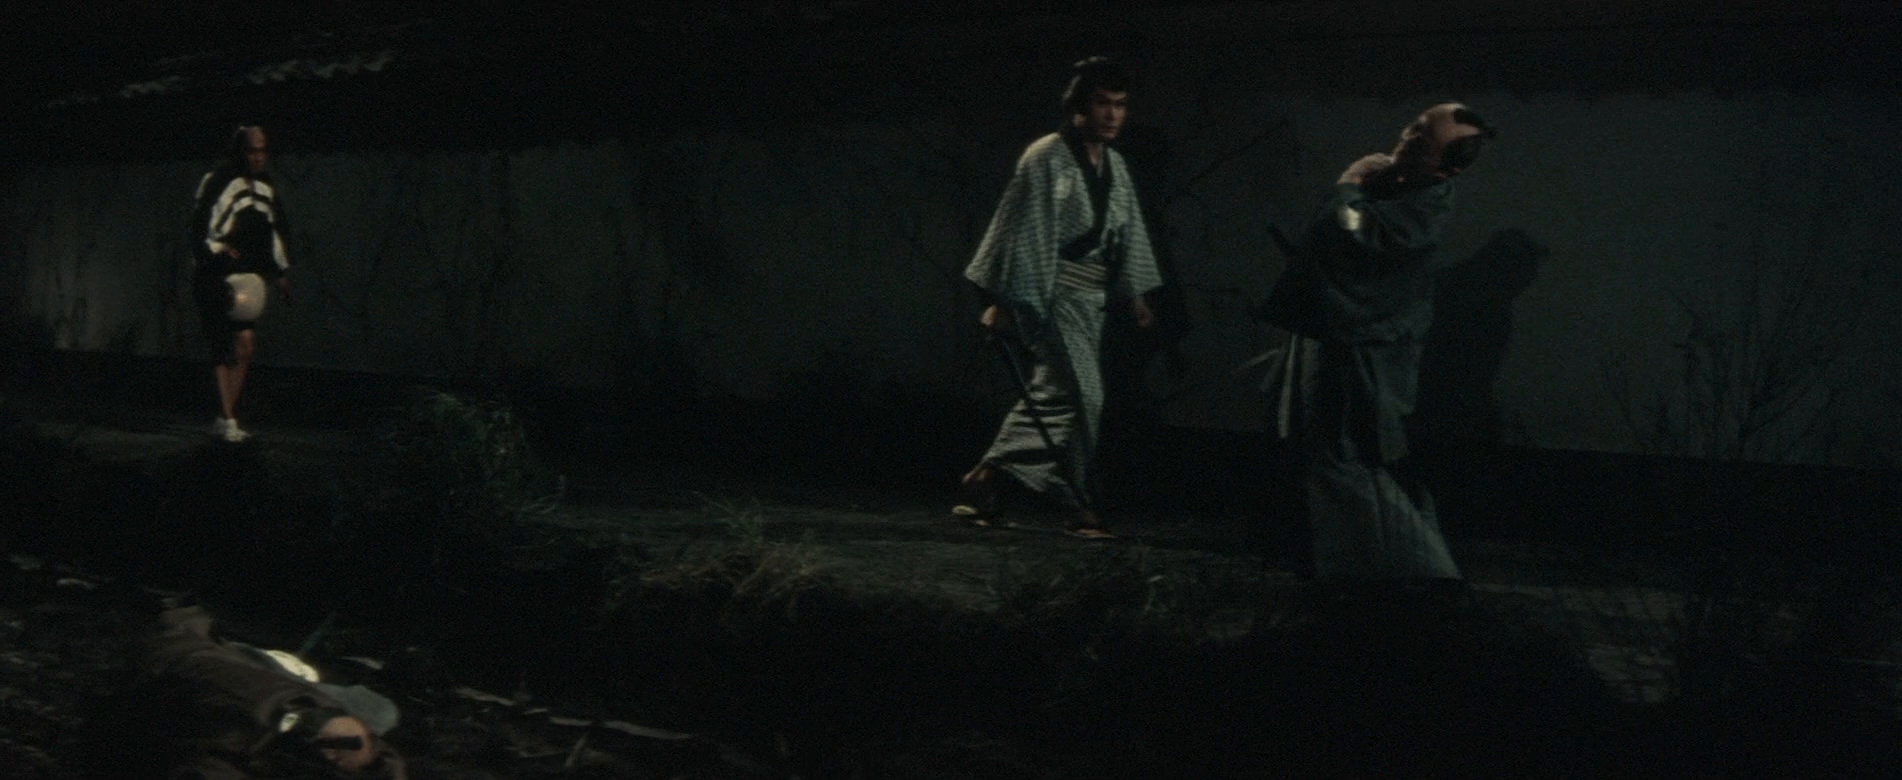 Ĺȹ̸ The.Ghost.Of.Yotsuya.1959.JAPANESE.1080p.BluRay.x264-HANDJOB 6.37GB-2.png